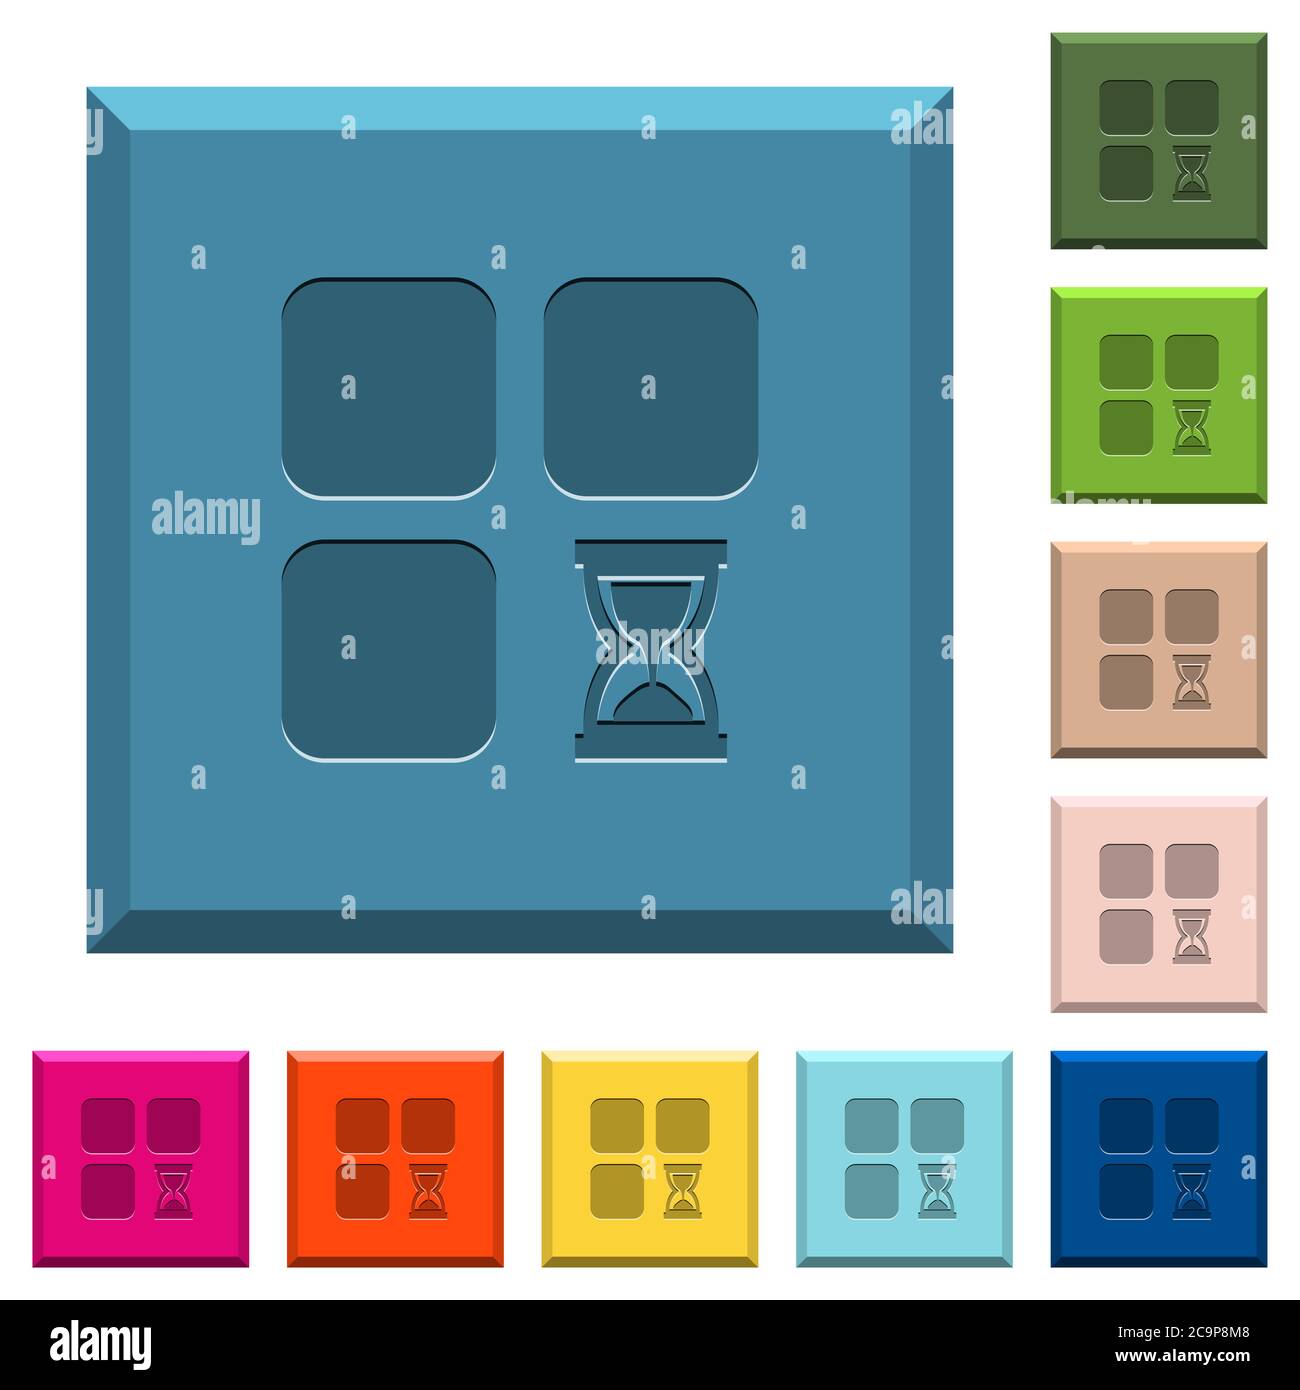 Componente esperando iconos grabados en botones cuadrados con bordes en varios colores de moda Ilustración del Vector